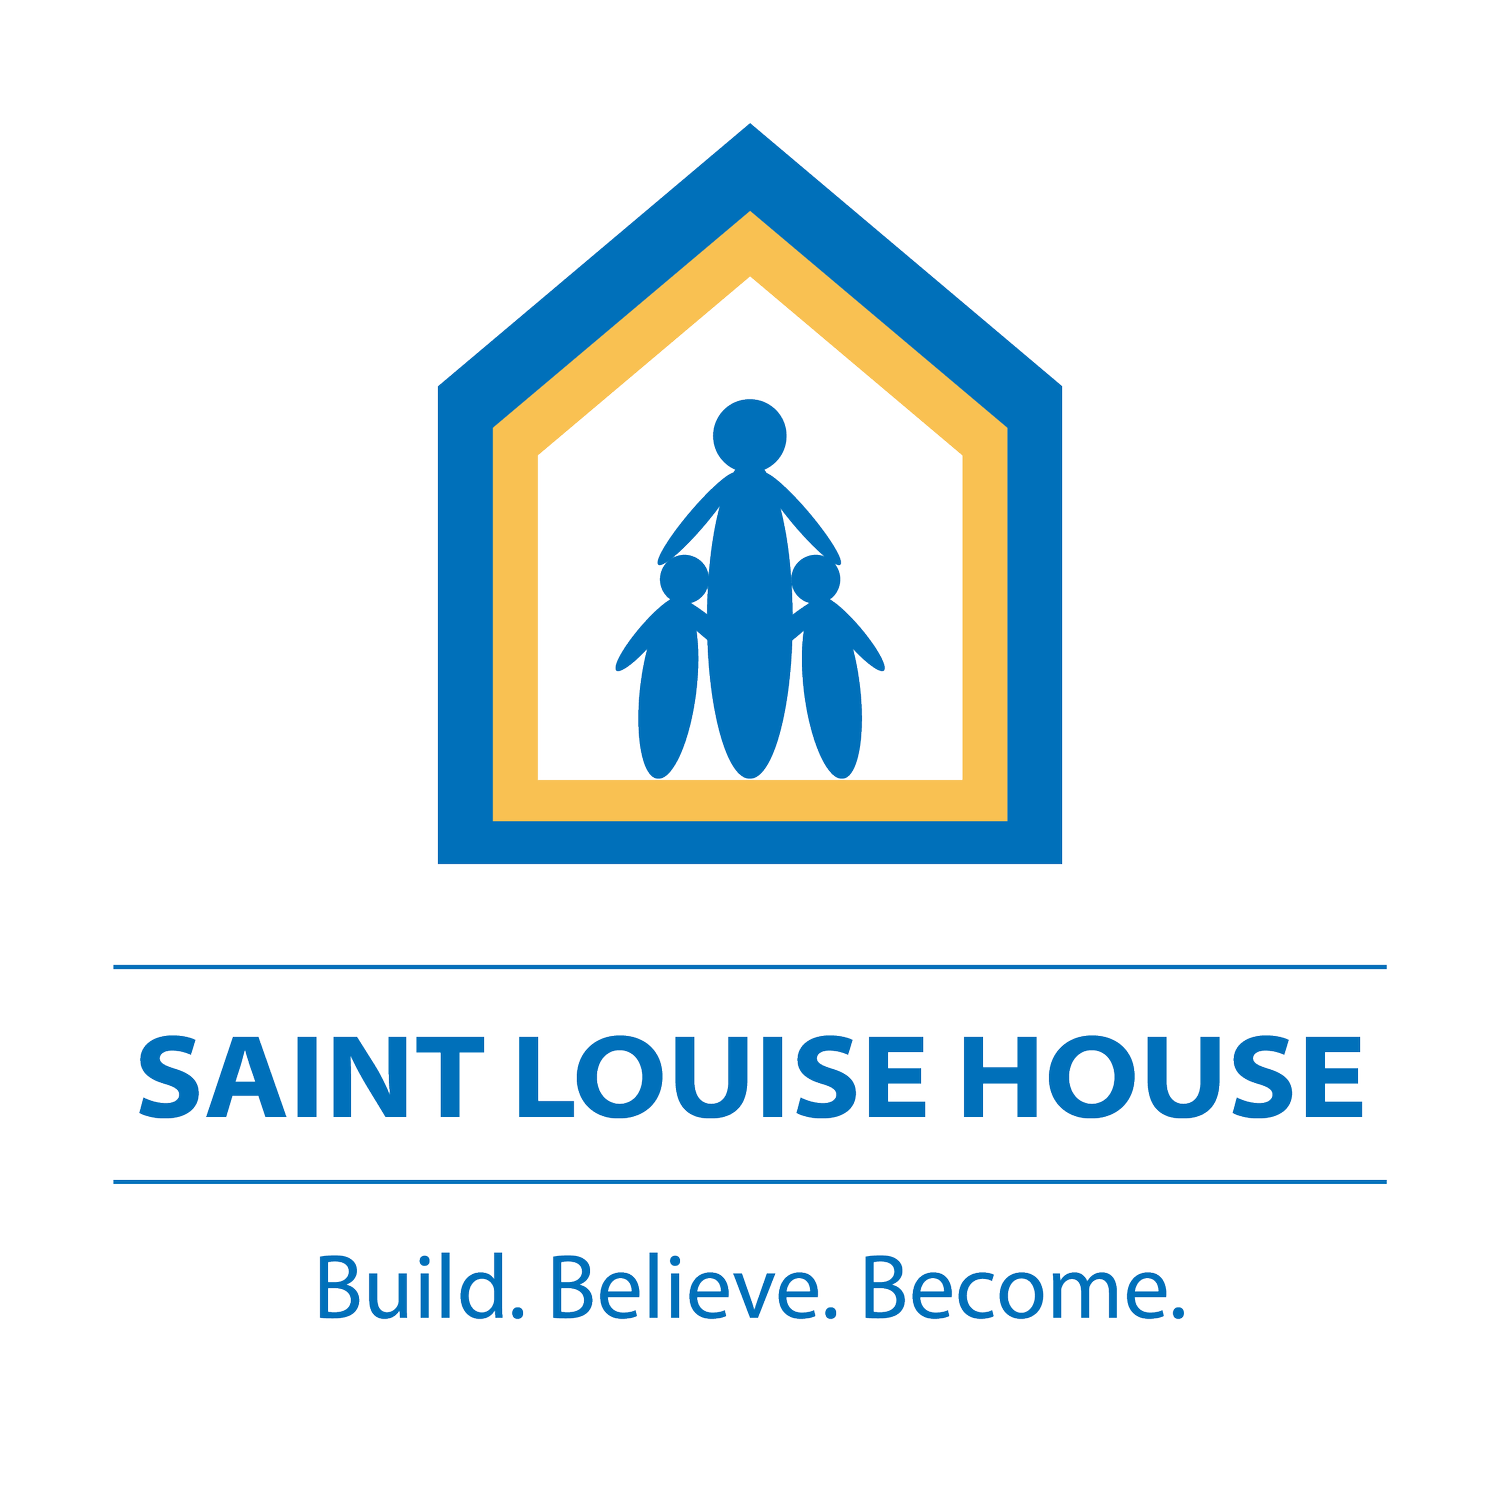 Saint Louise House Events